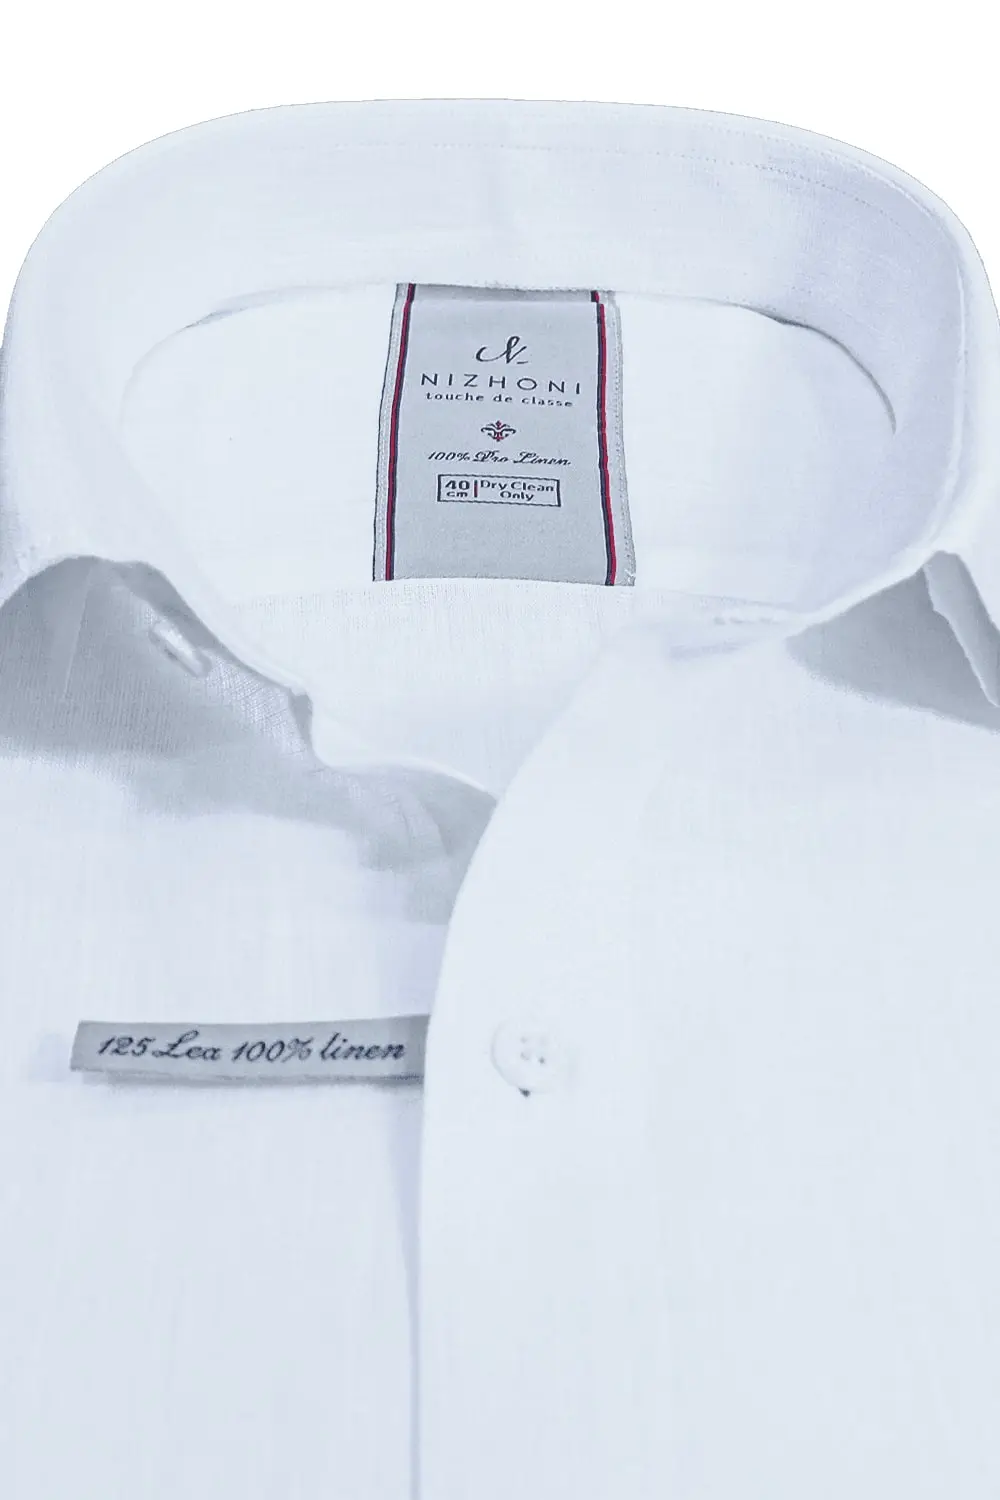 White Belgium 125's * 125's Count Pro Linen Shirt WT-15